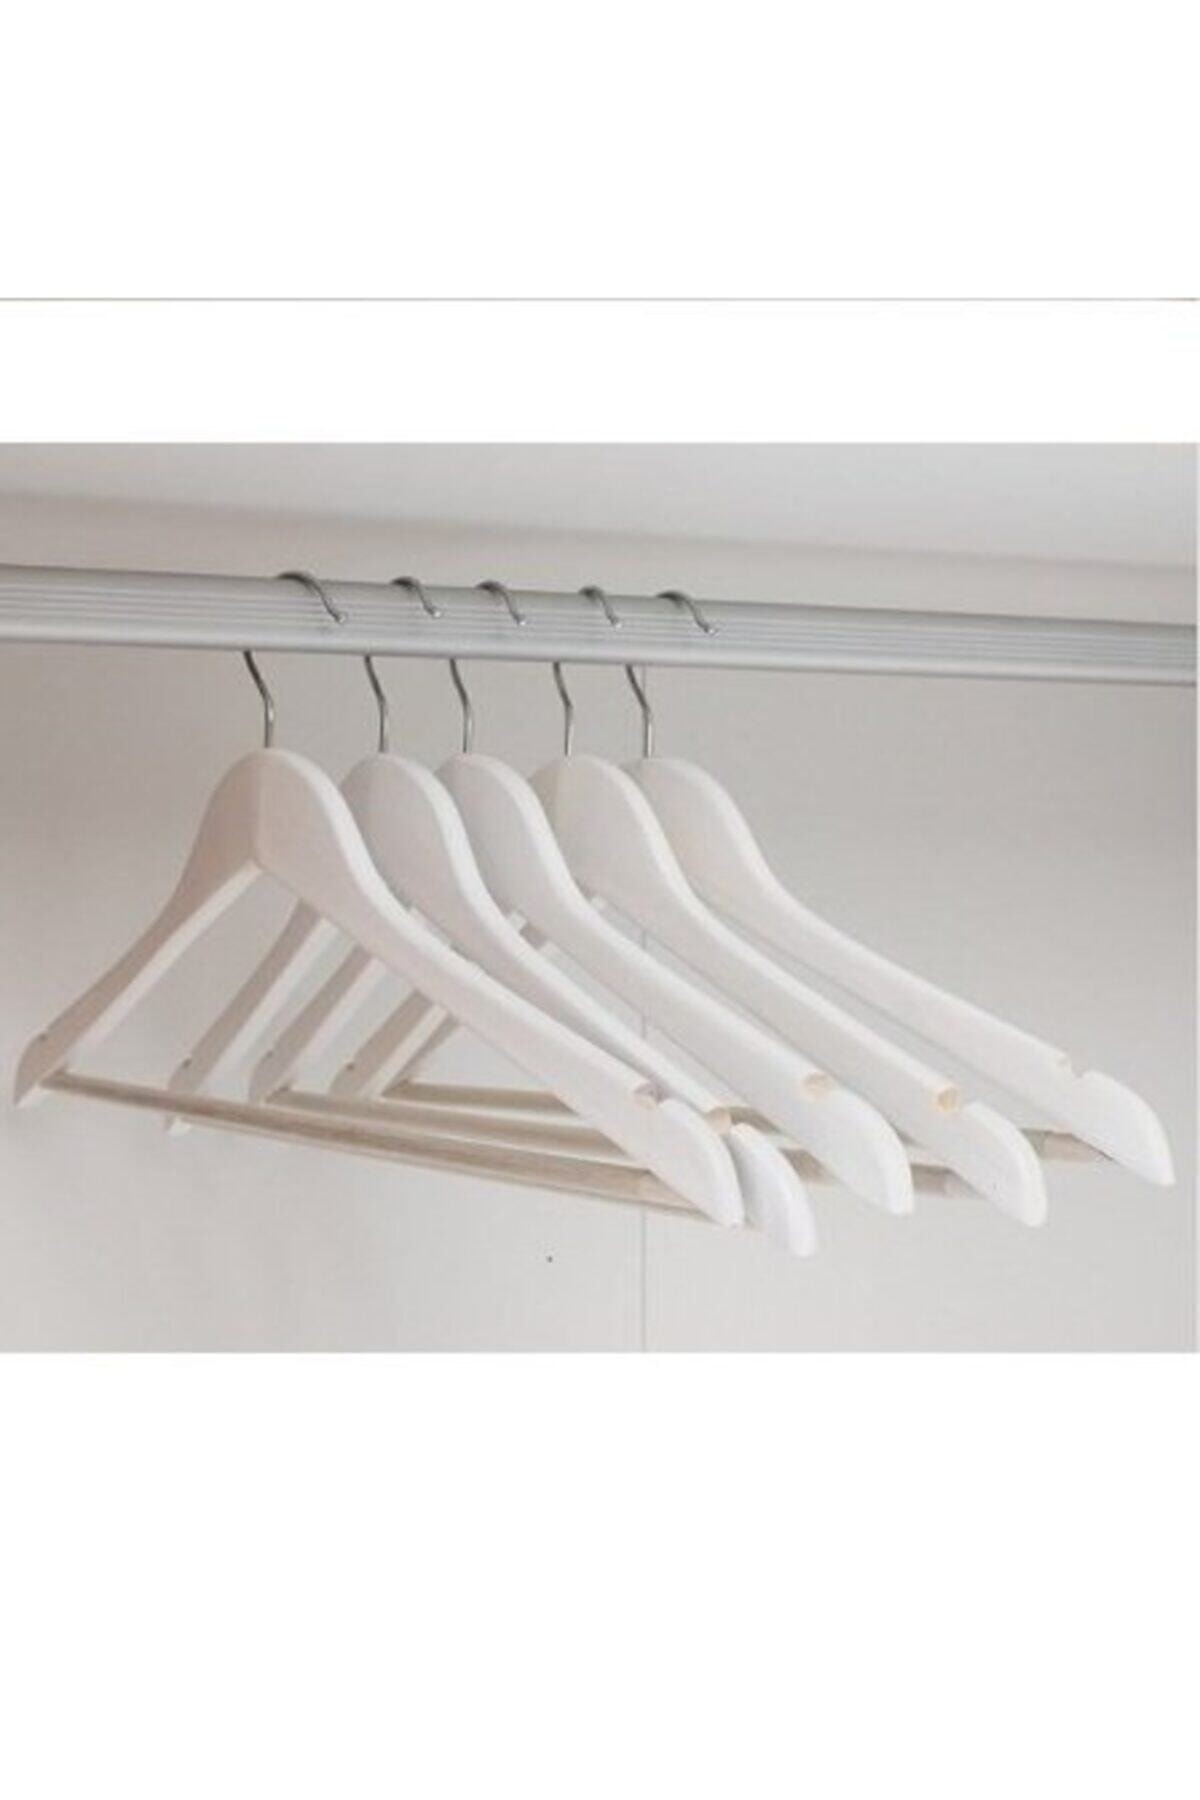 12Adet Hout Look Wit Plastic Hanger, Kleerhanger Ruimtebesparende Kleerhangers Broek Hangers Huishoudelijke Product